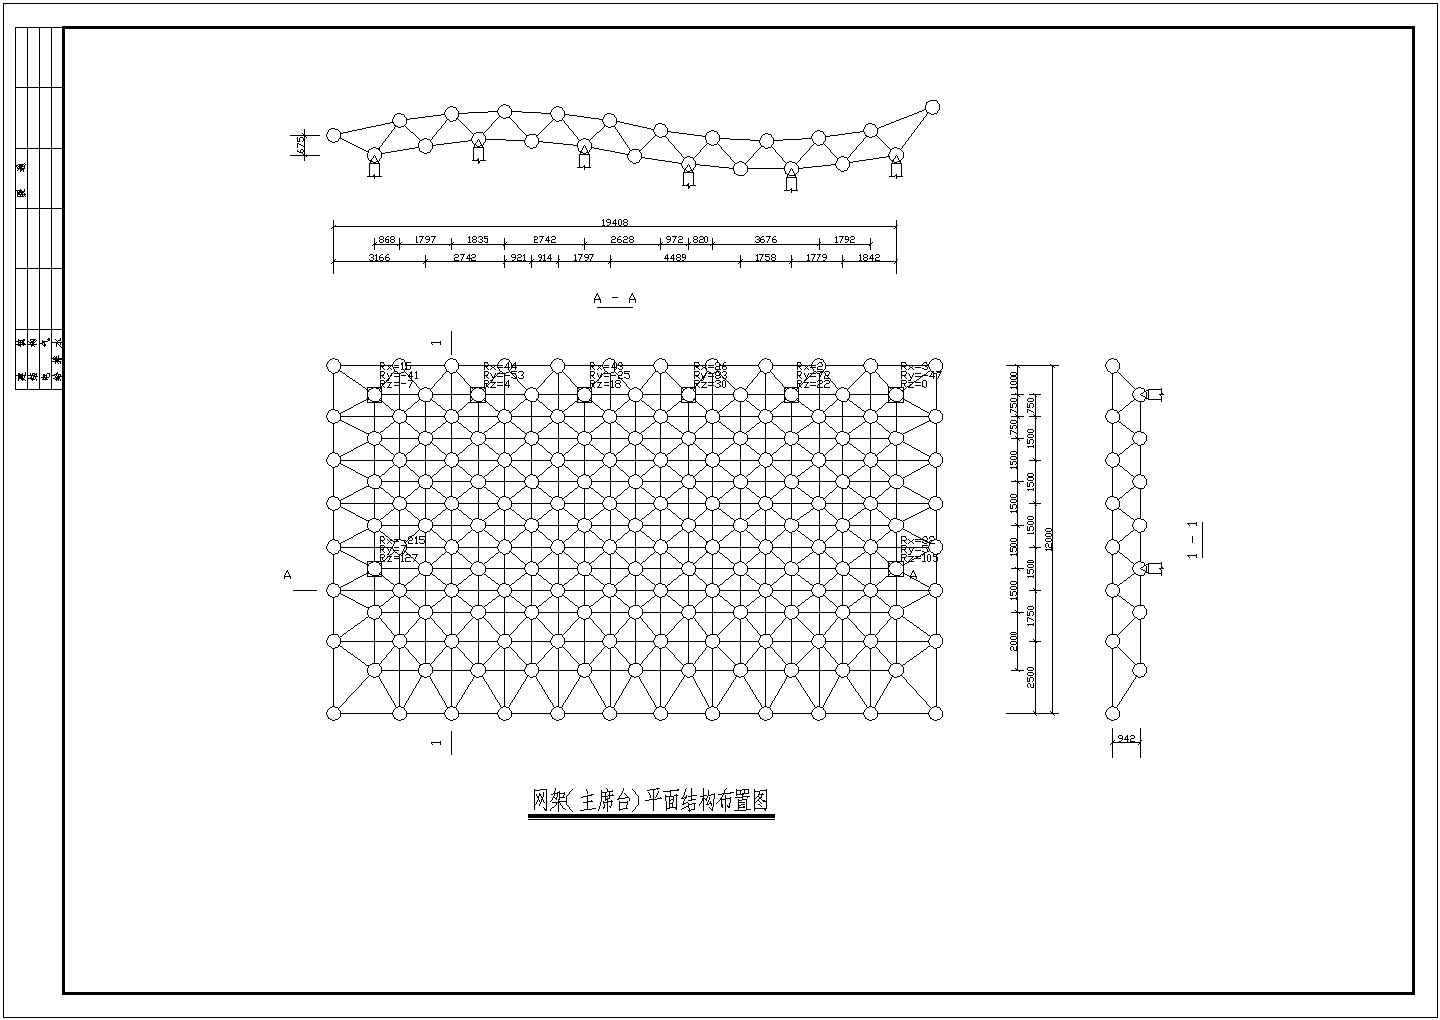 某地中学主席台雨棚网架结构设计施工图